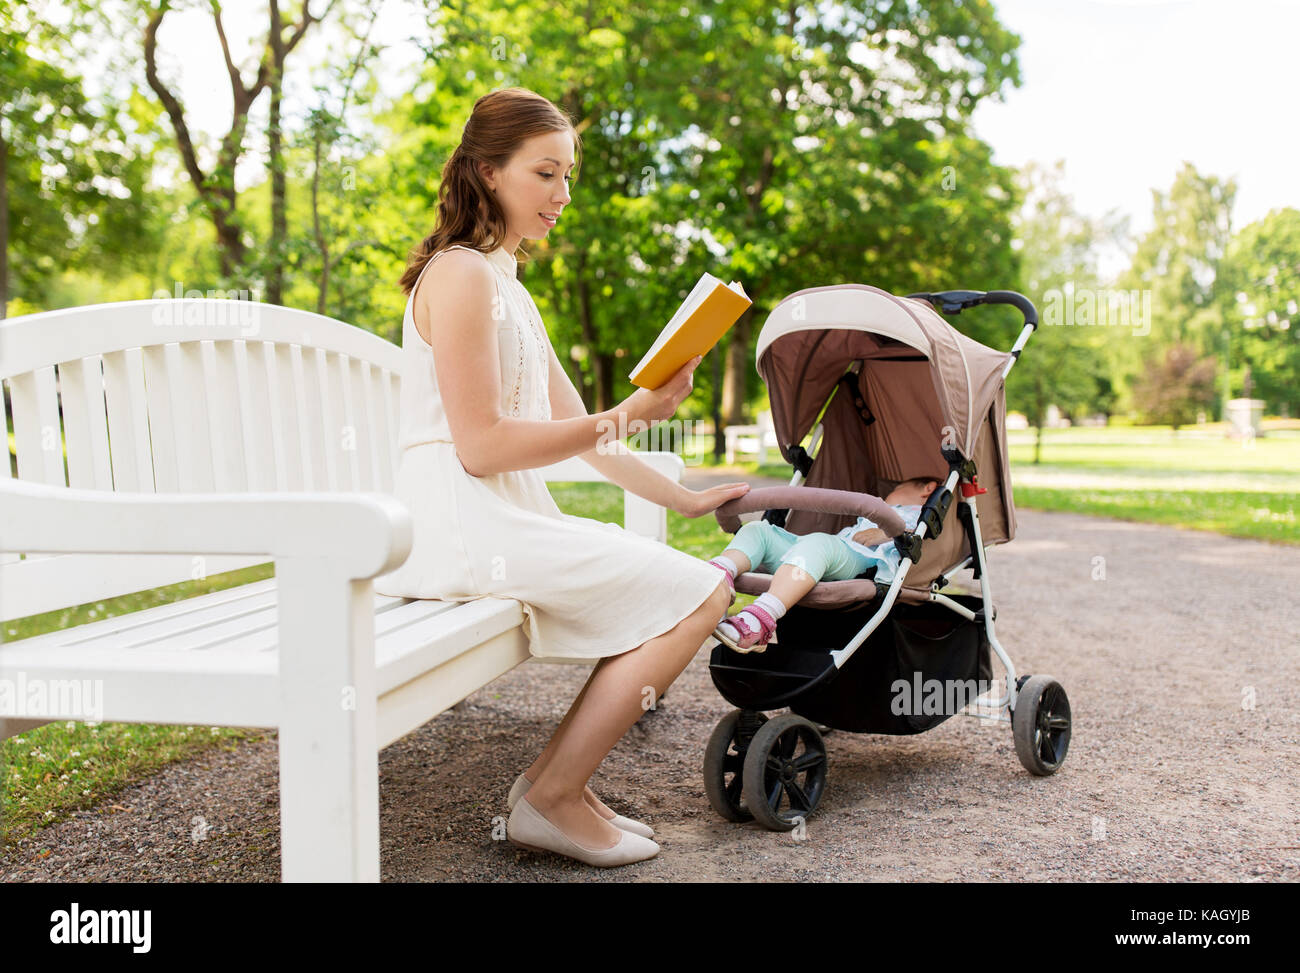 Mère avec enfant en poussette reading book at park Banque D'Images